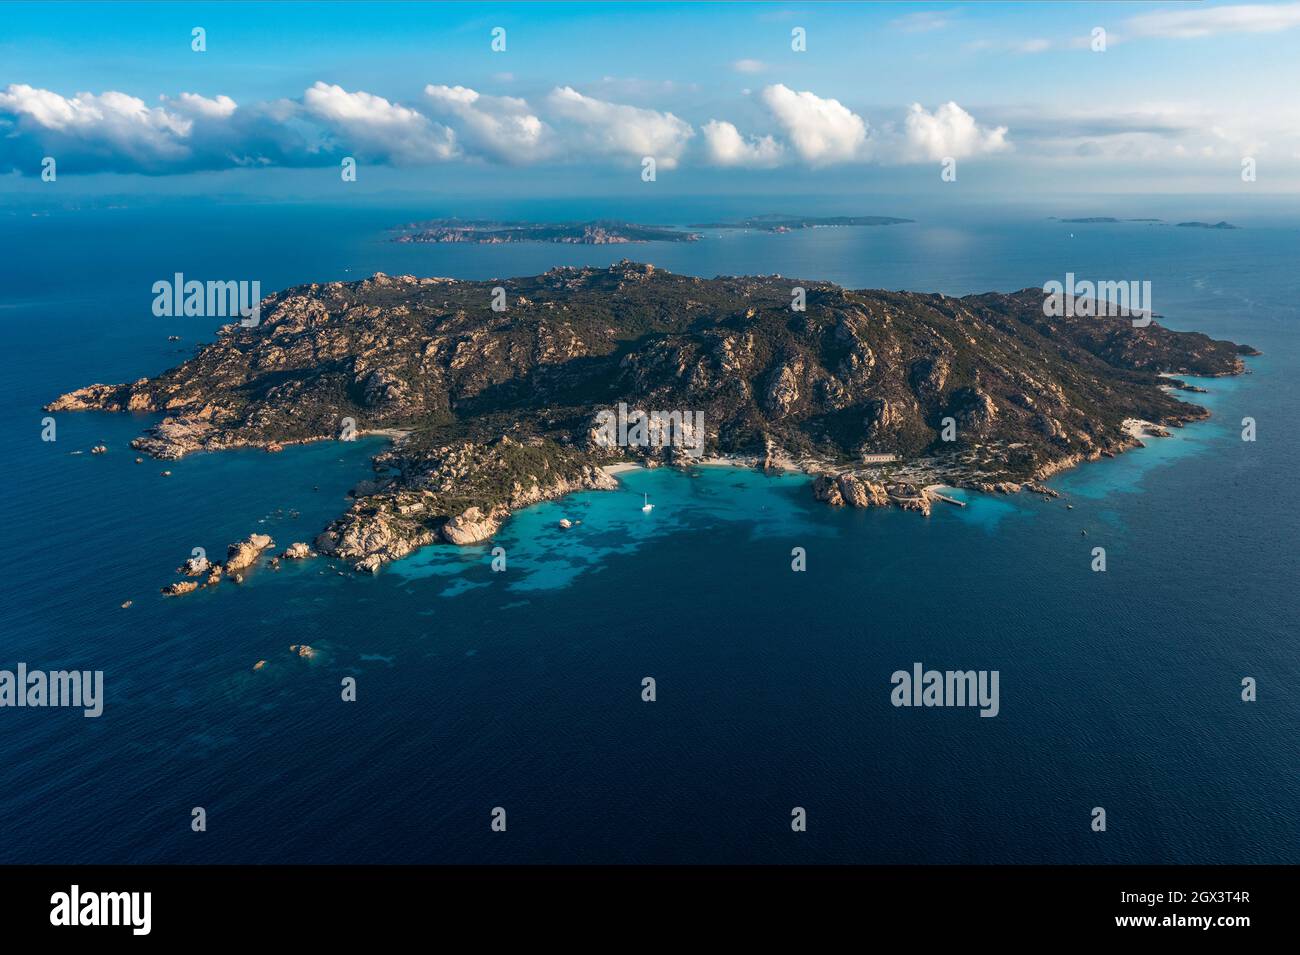 Vue d'en haut, prise de vue aérienne, vue panoramique sur l'île de Spargi avec Cala Corsara, une plage de sable blanc baignée par une eau turquoise. Banque D'Images